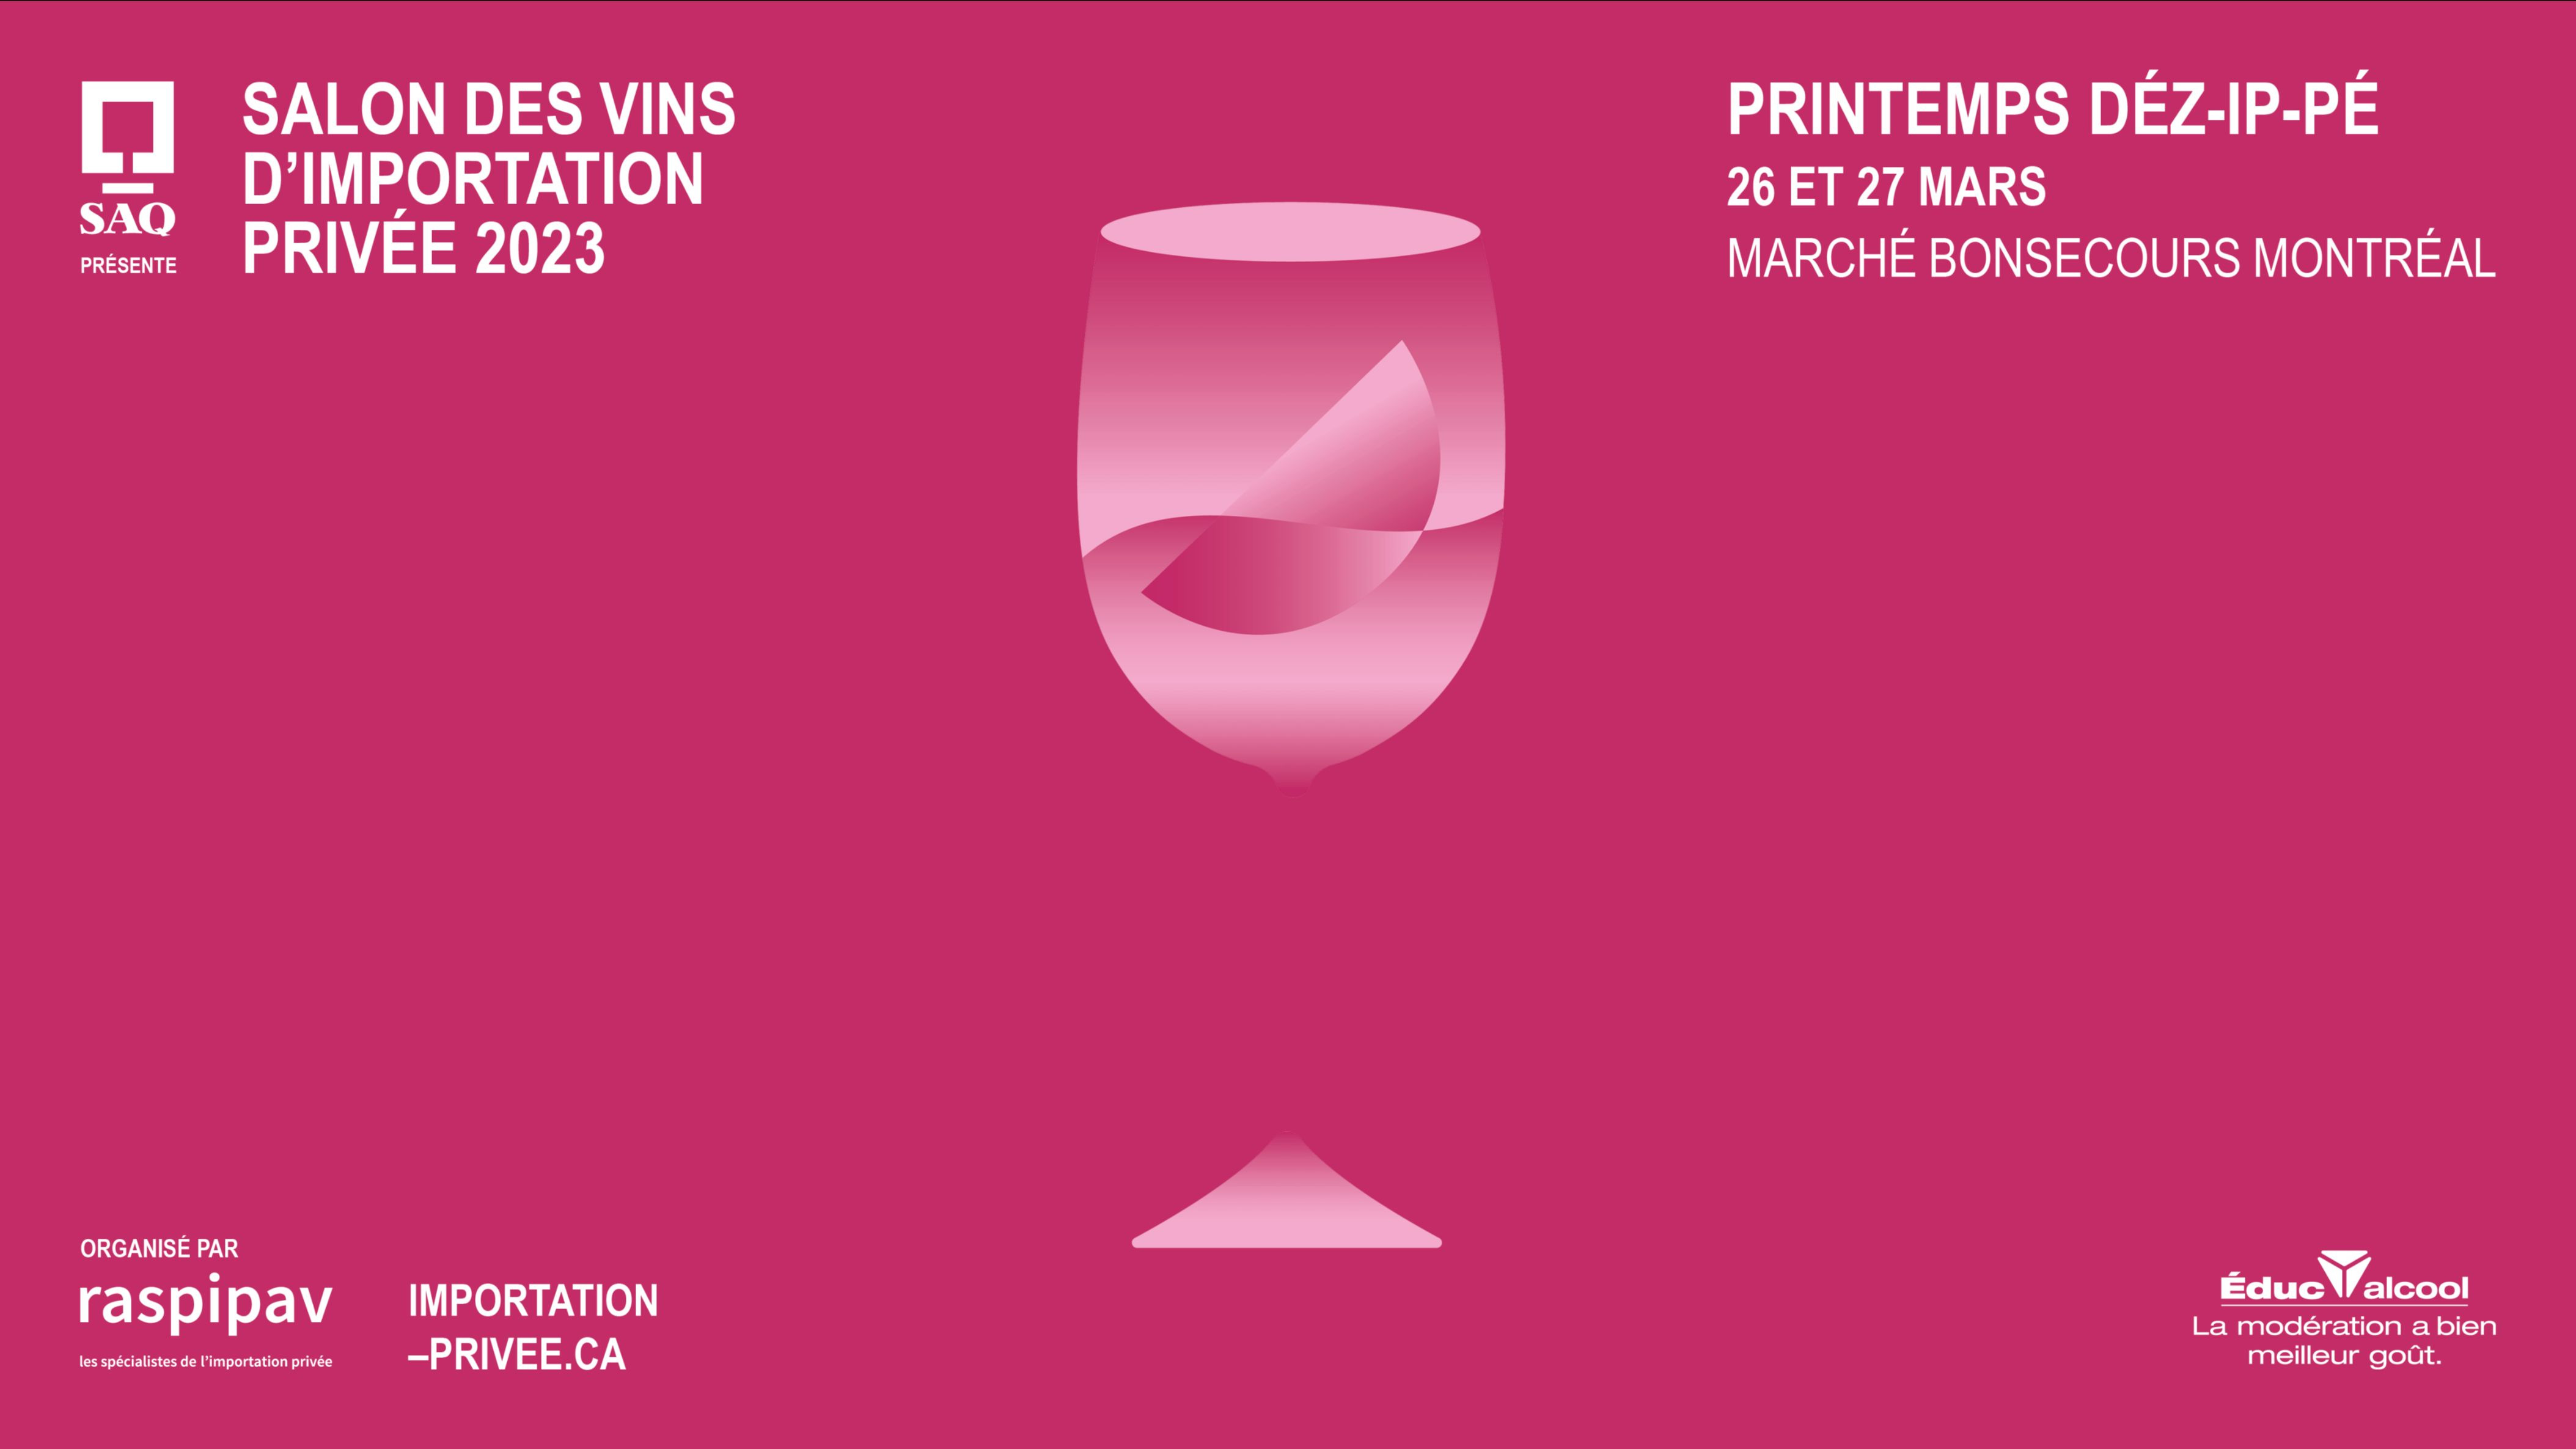 La SAQ présente la 13e édition du Salon des vins d’importation privée 2023, PRINTEMPS DÉZ.IP.PÉ